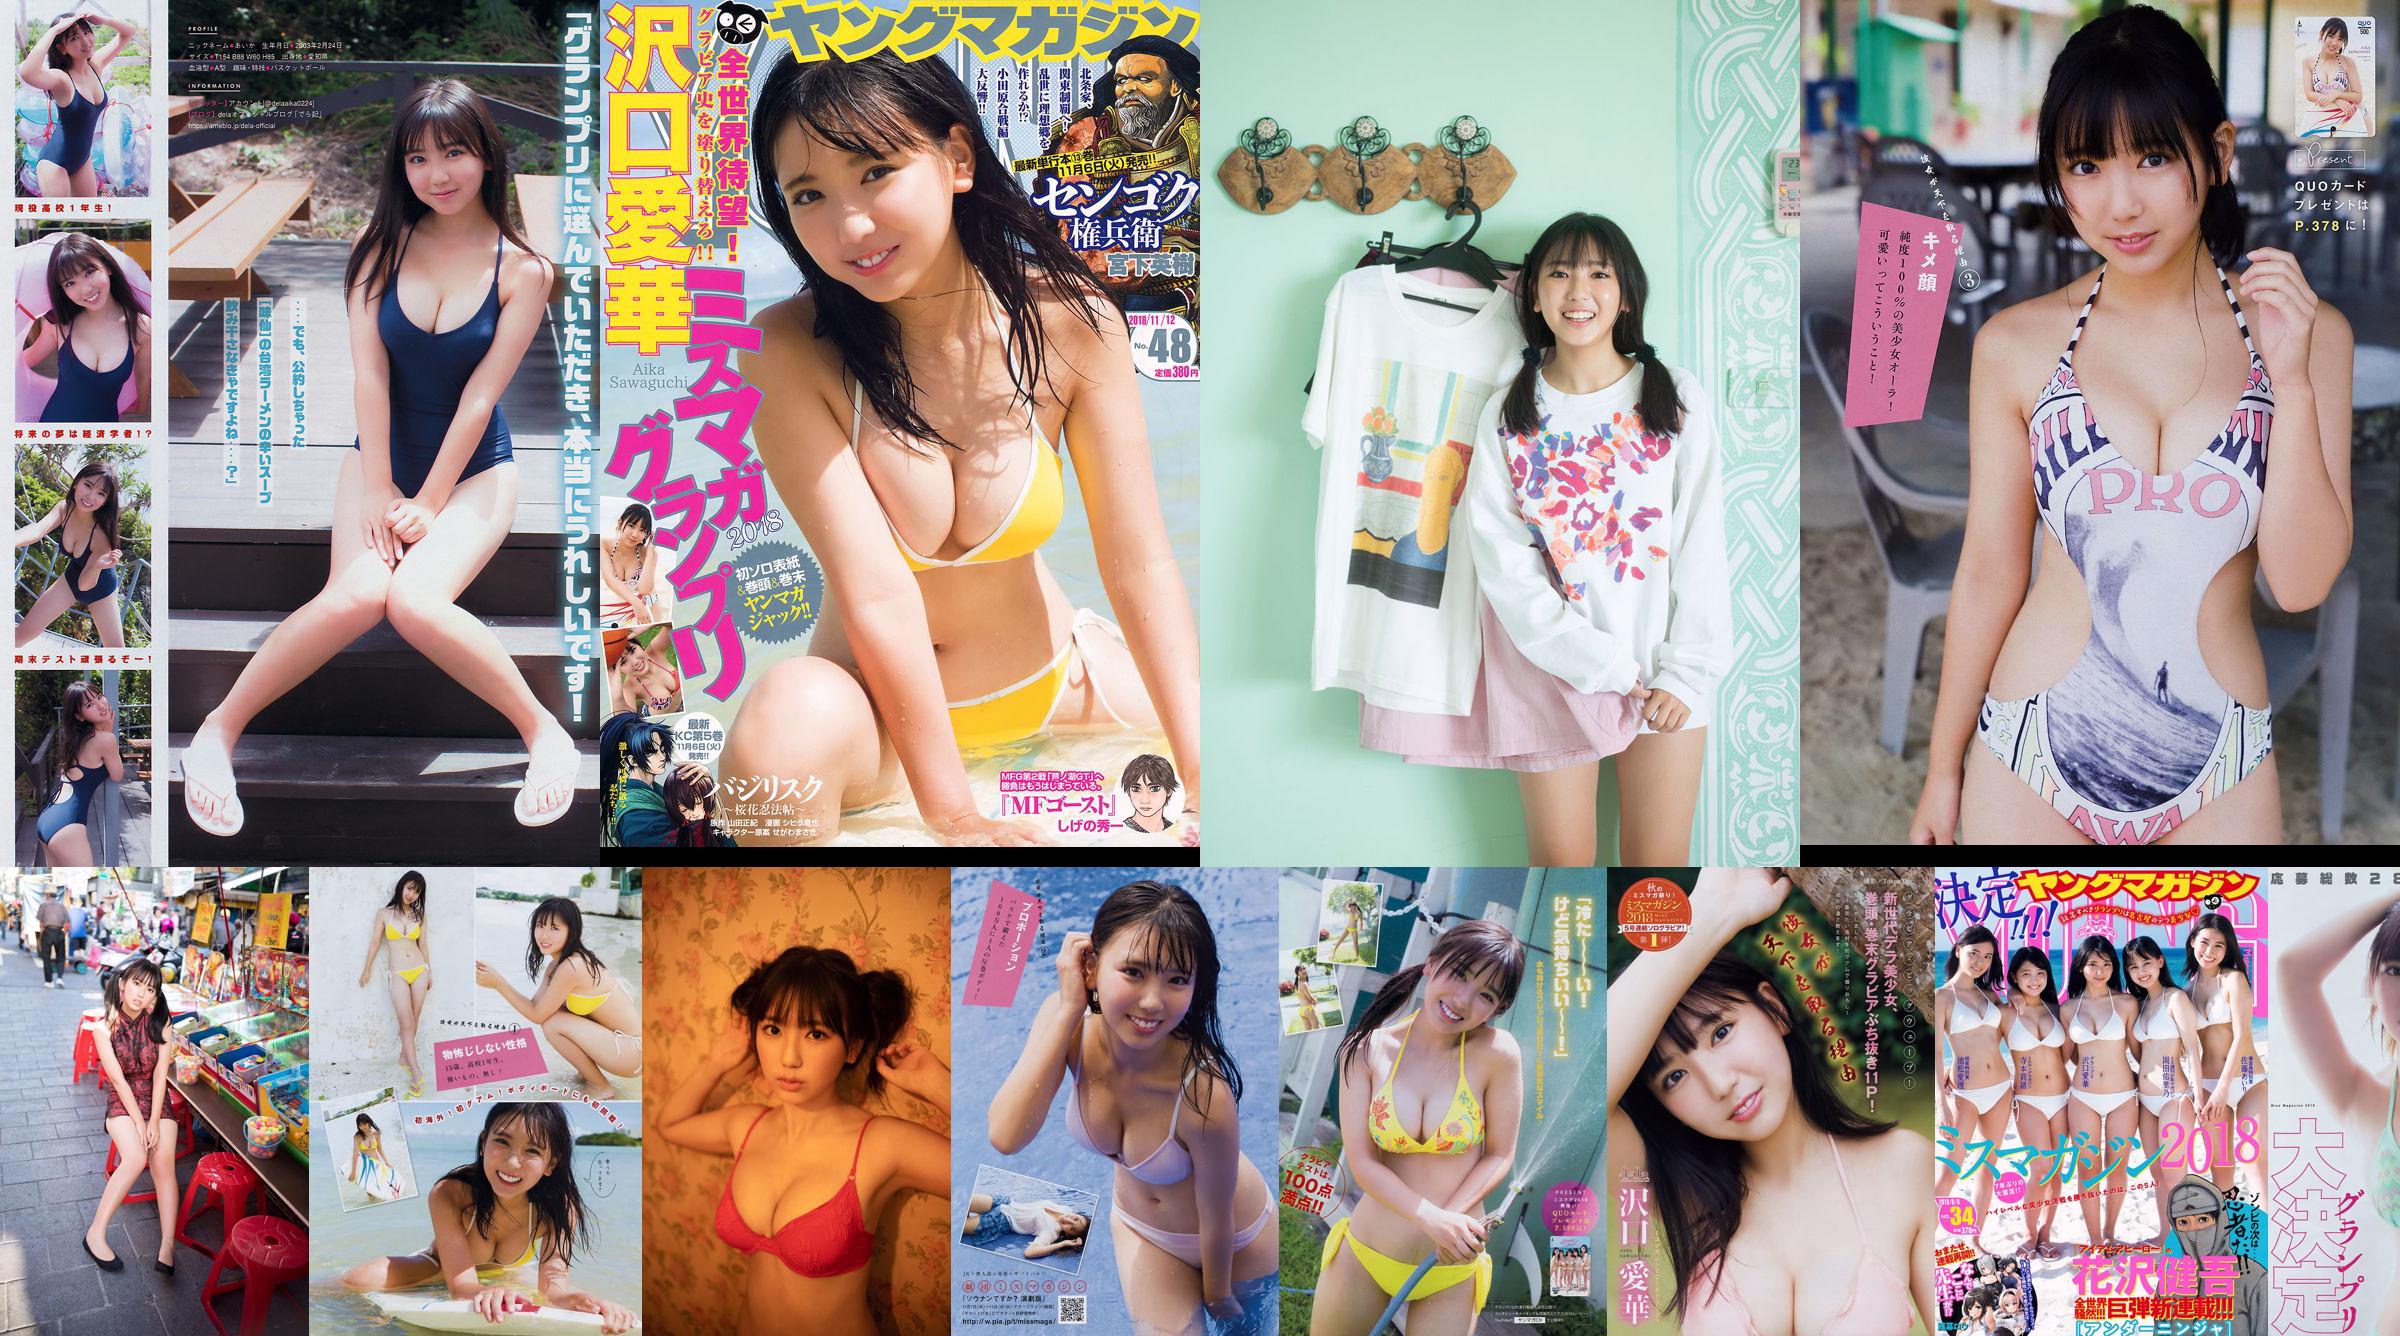 [Junges Magazin] Aika Sawaguchi No.48 Photo Magazine im Jahr 2018 No.eb711a Seite 1